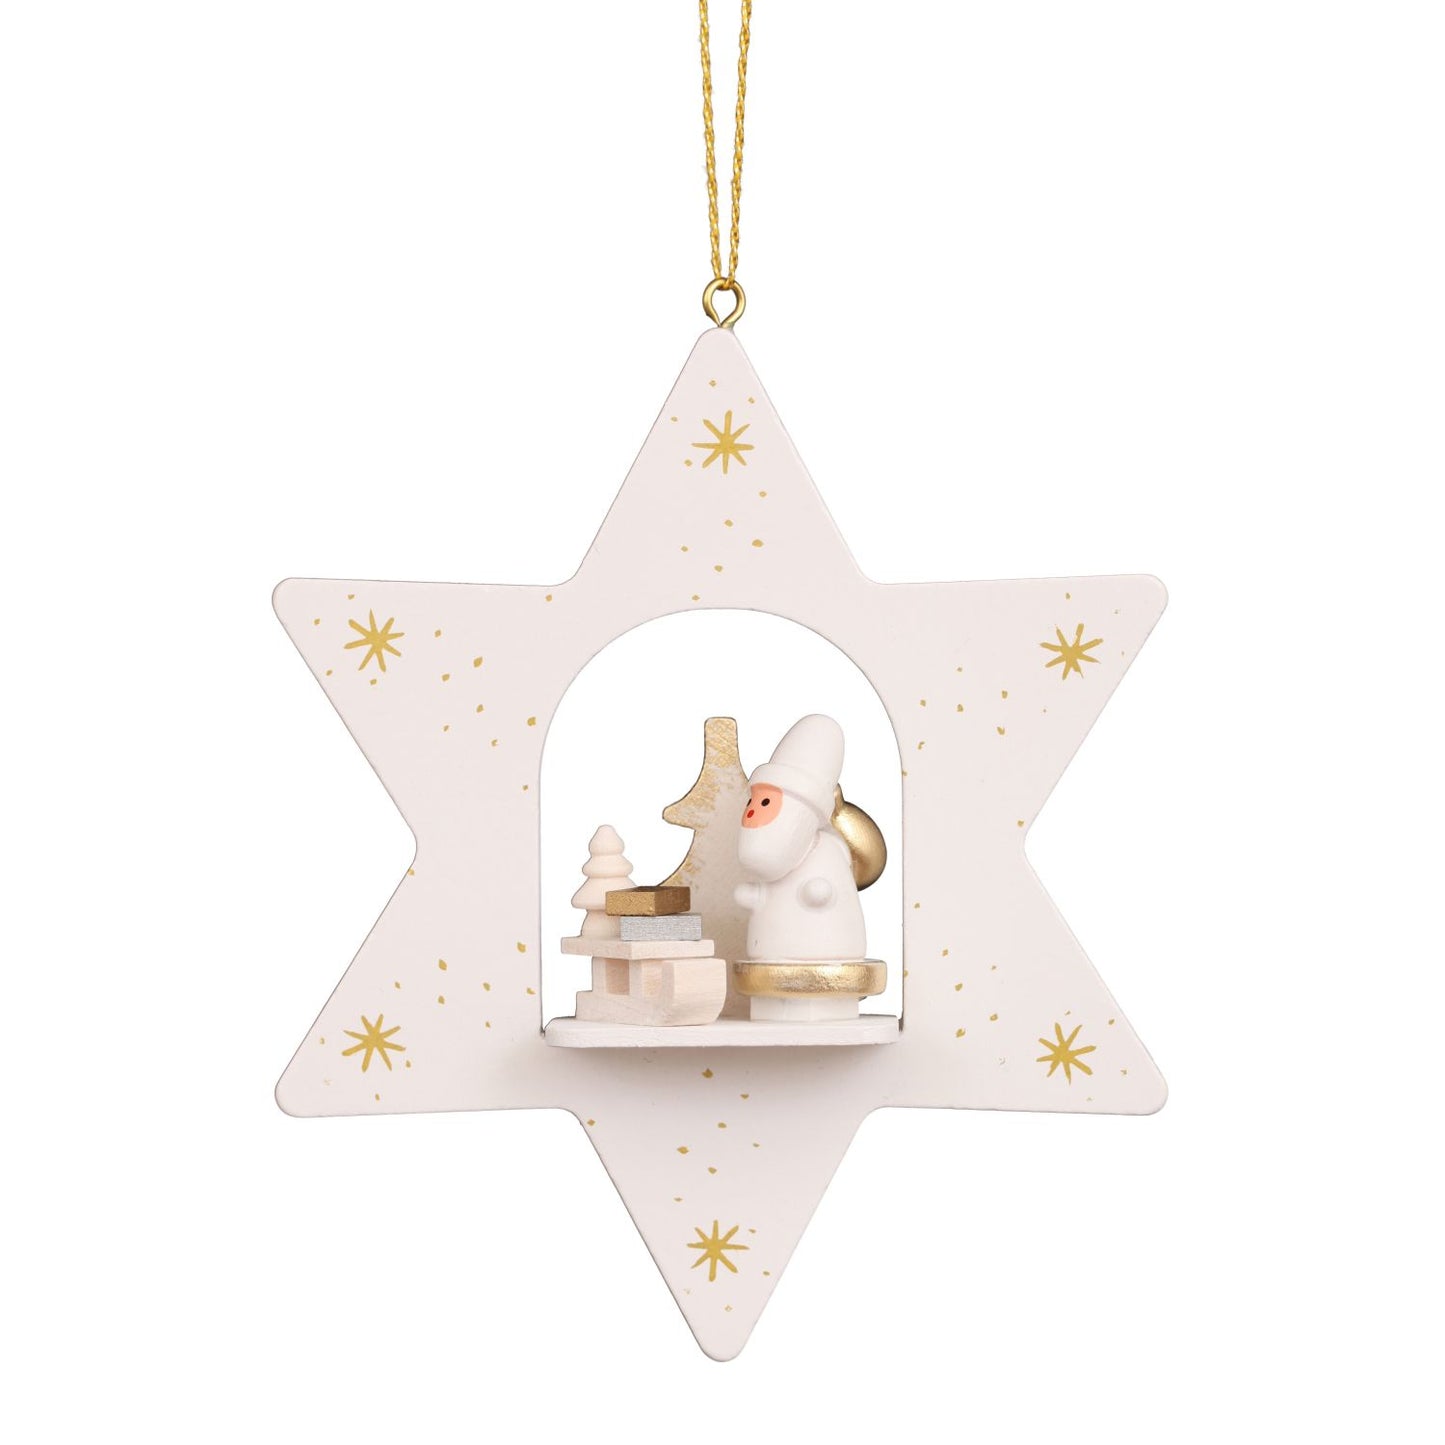 Alexander Taron Christian Ulbricht Ornament - White Star Santa